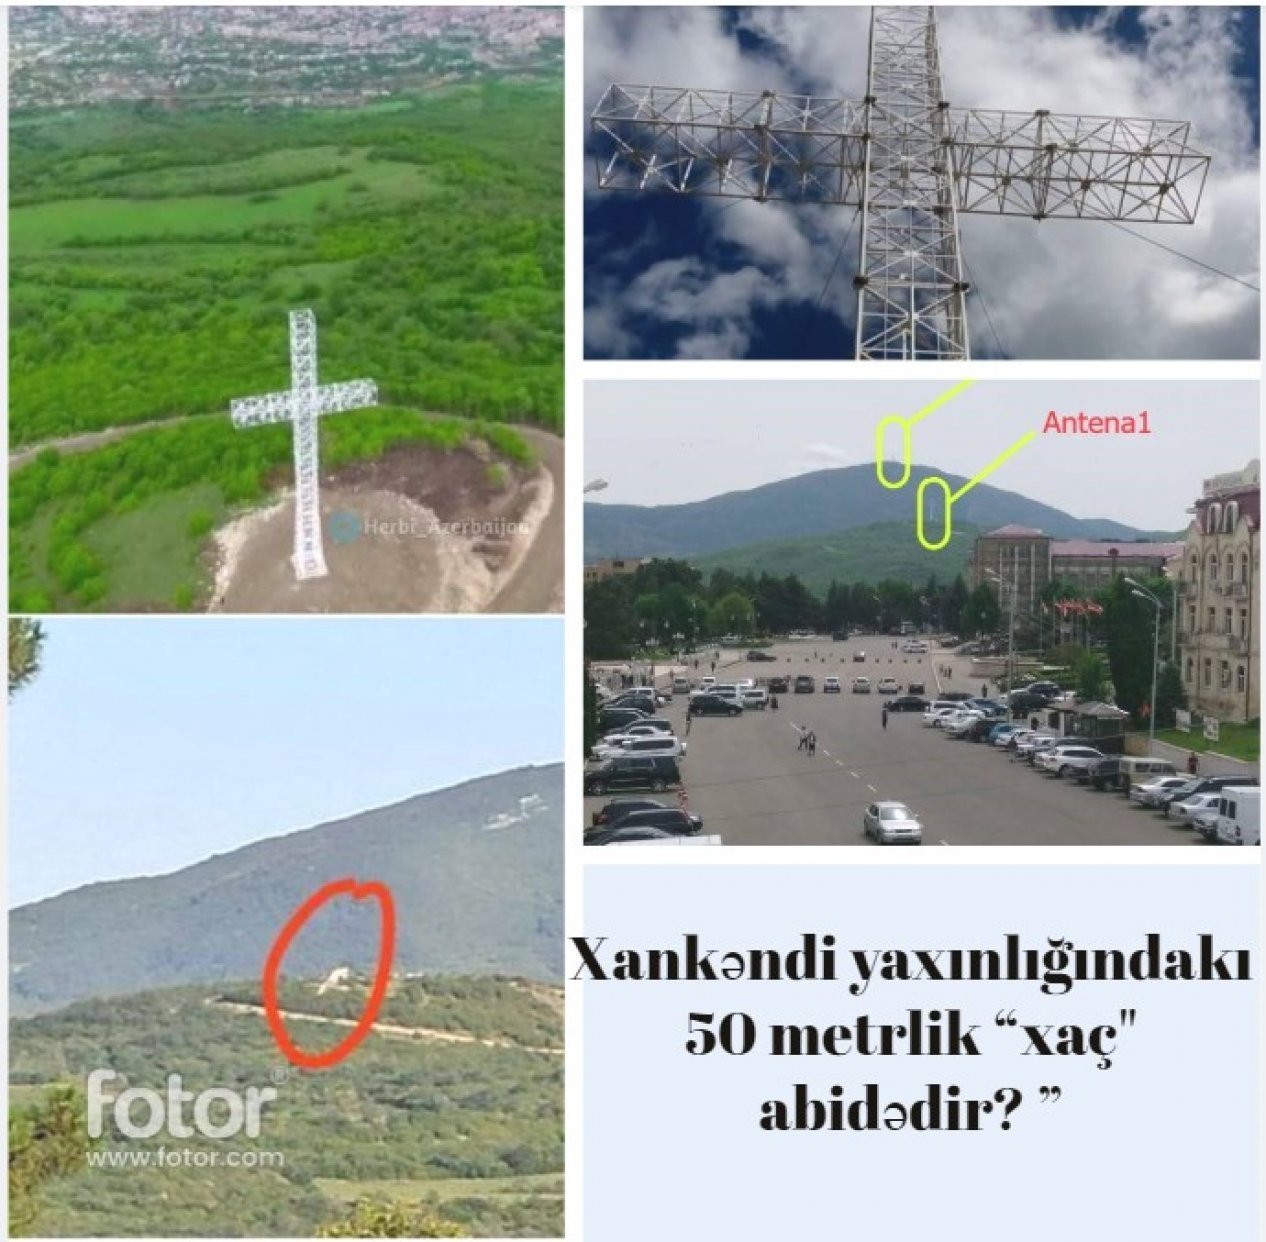 Очередной ложный иск армян в международном суде: возле Ханкенди снесен 50-метровый крест